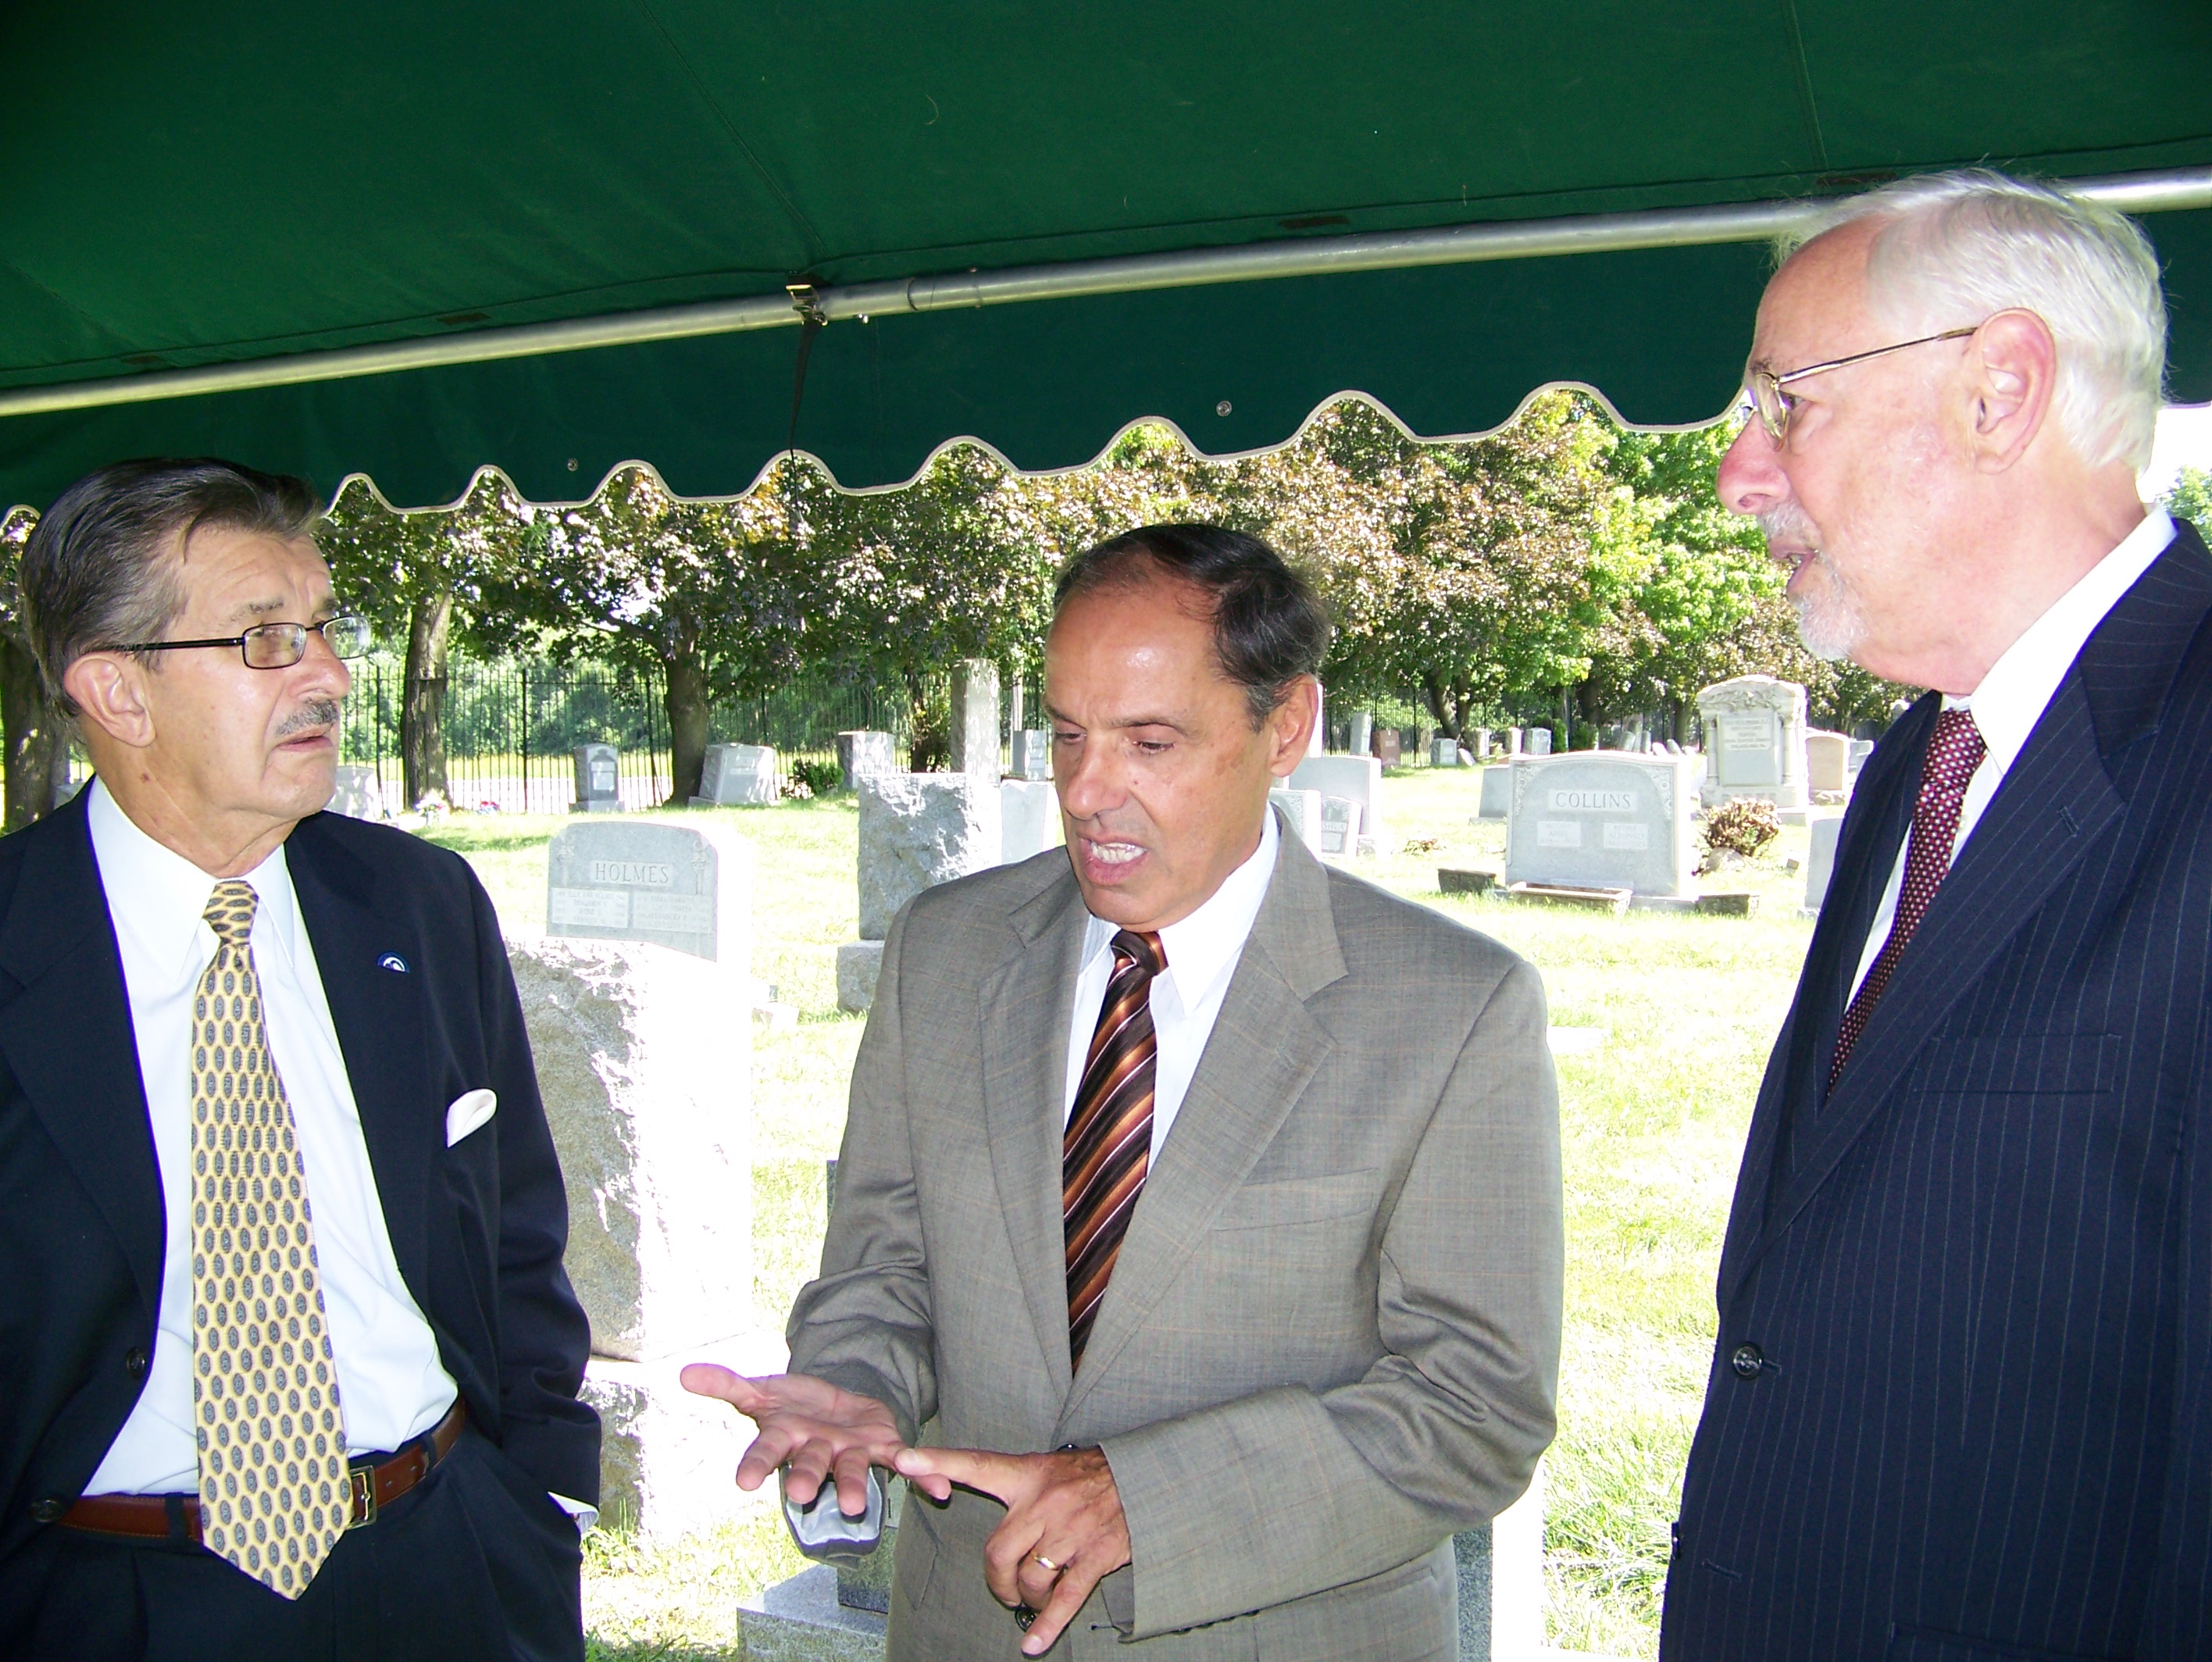 Chairman Zazycyny, Frank Falcone & Robert Stern